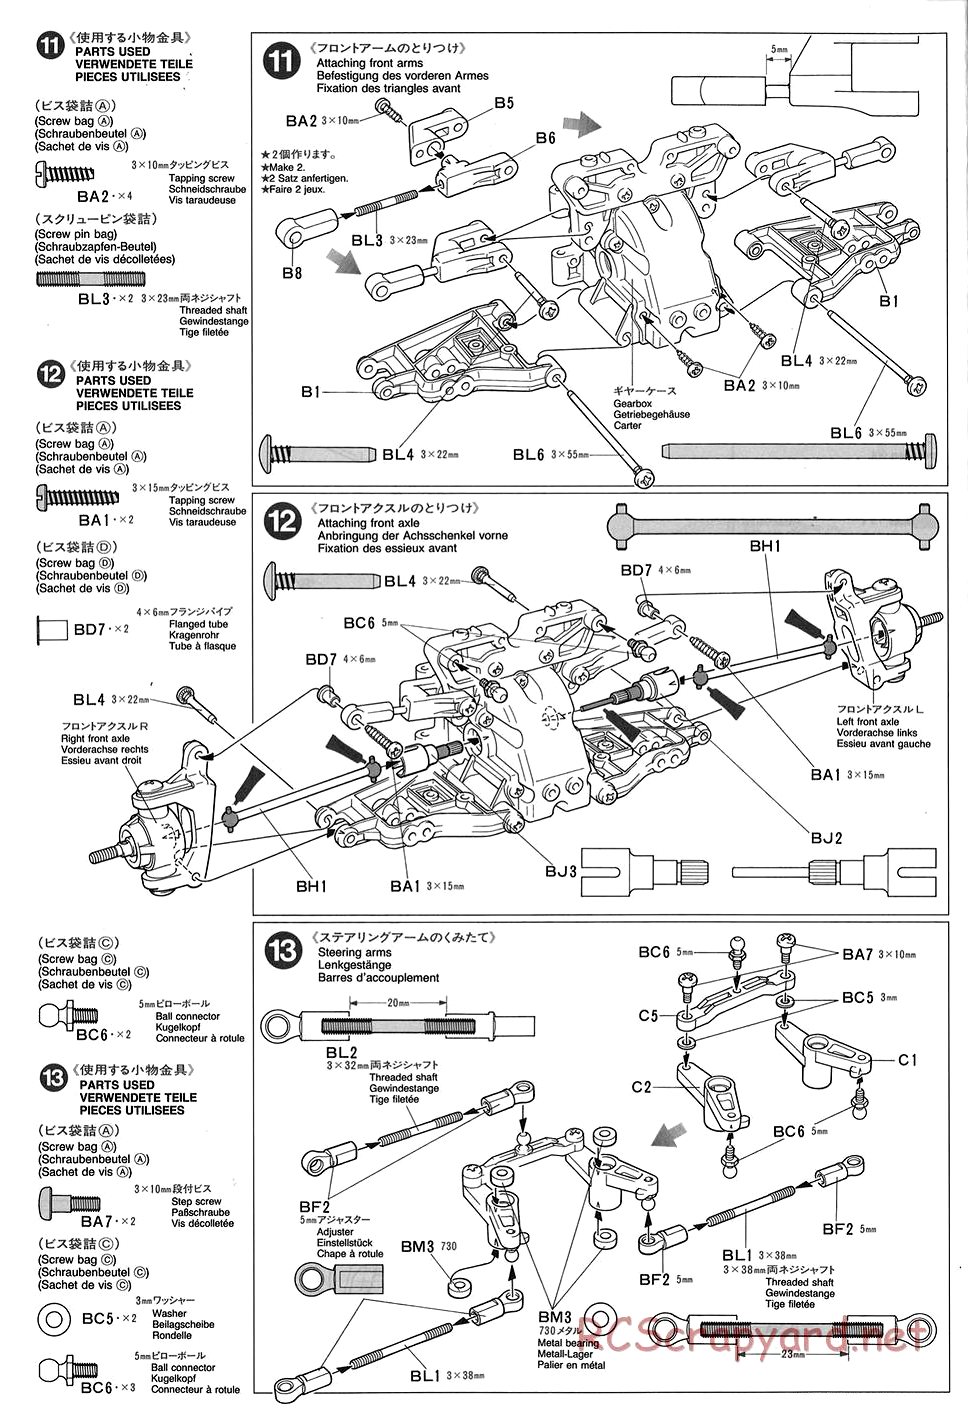 Tamiya - TGX Mk.1 Chassis - Manual - Page 8